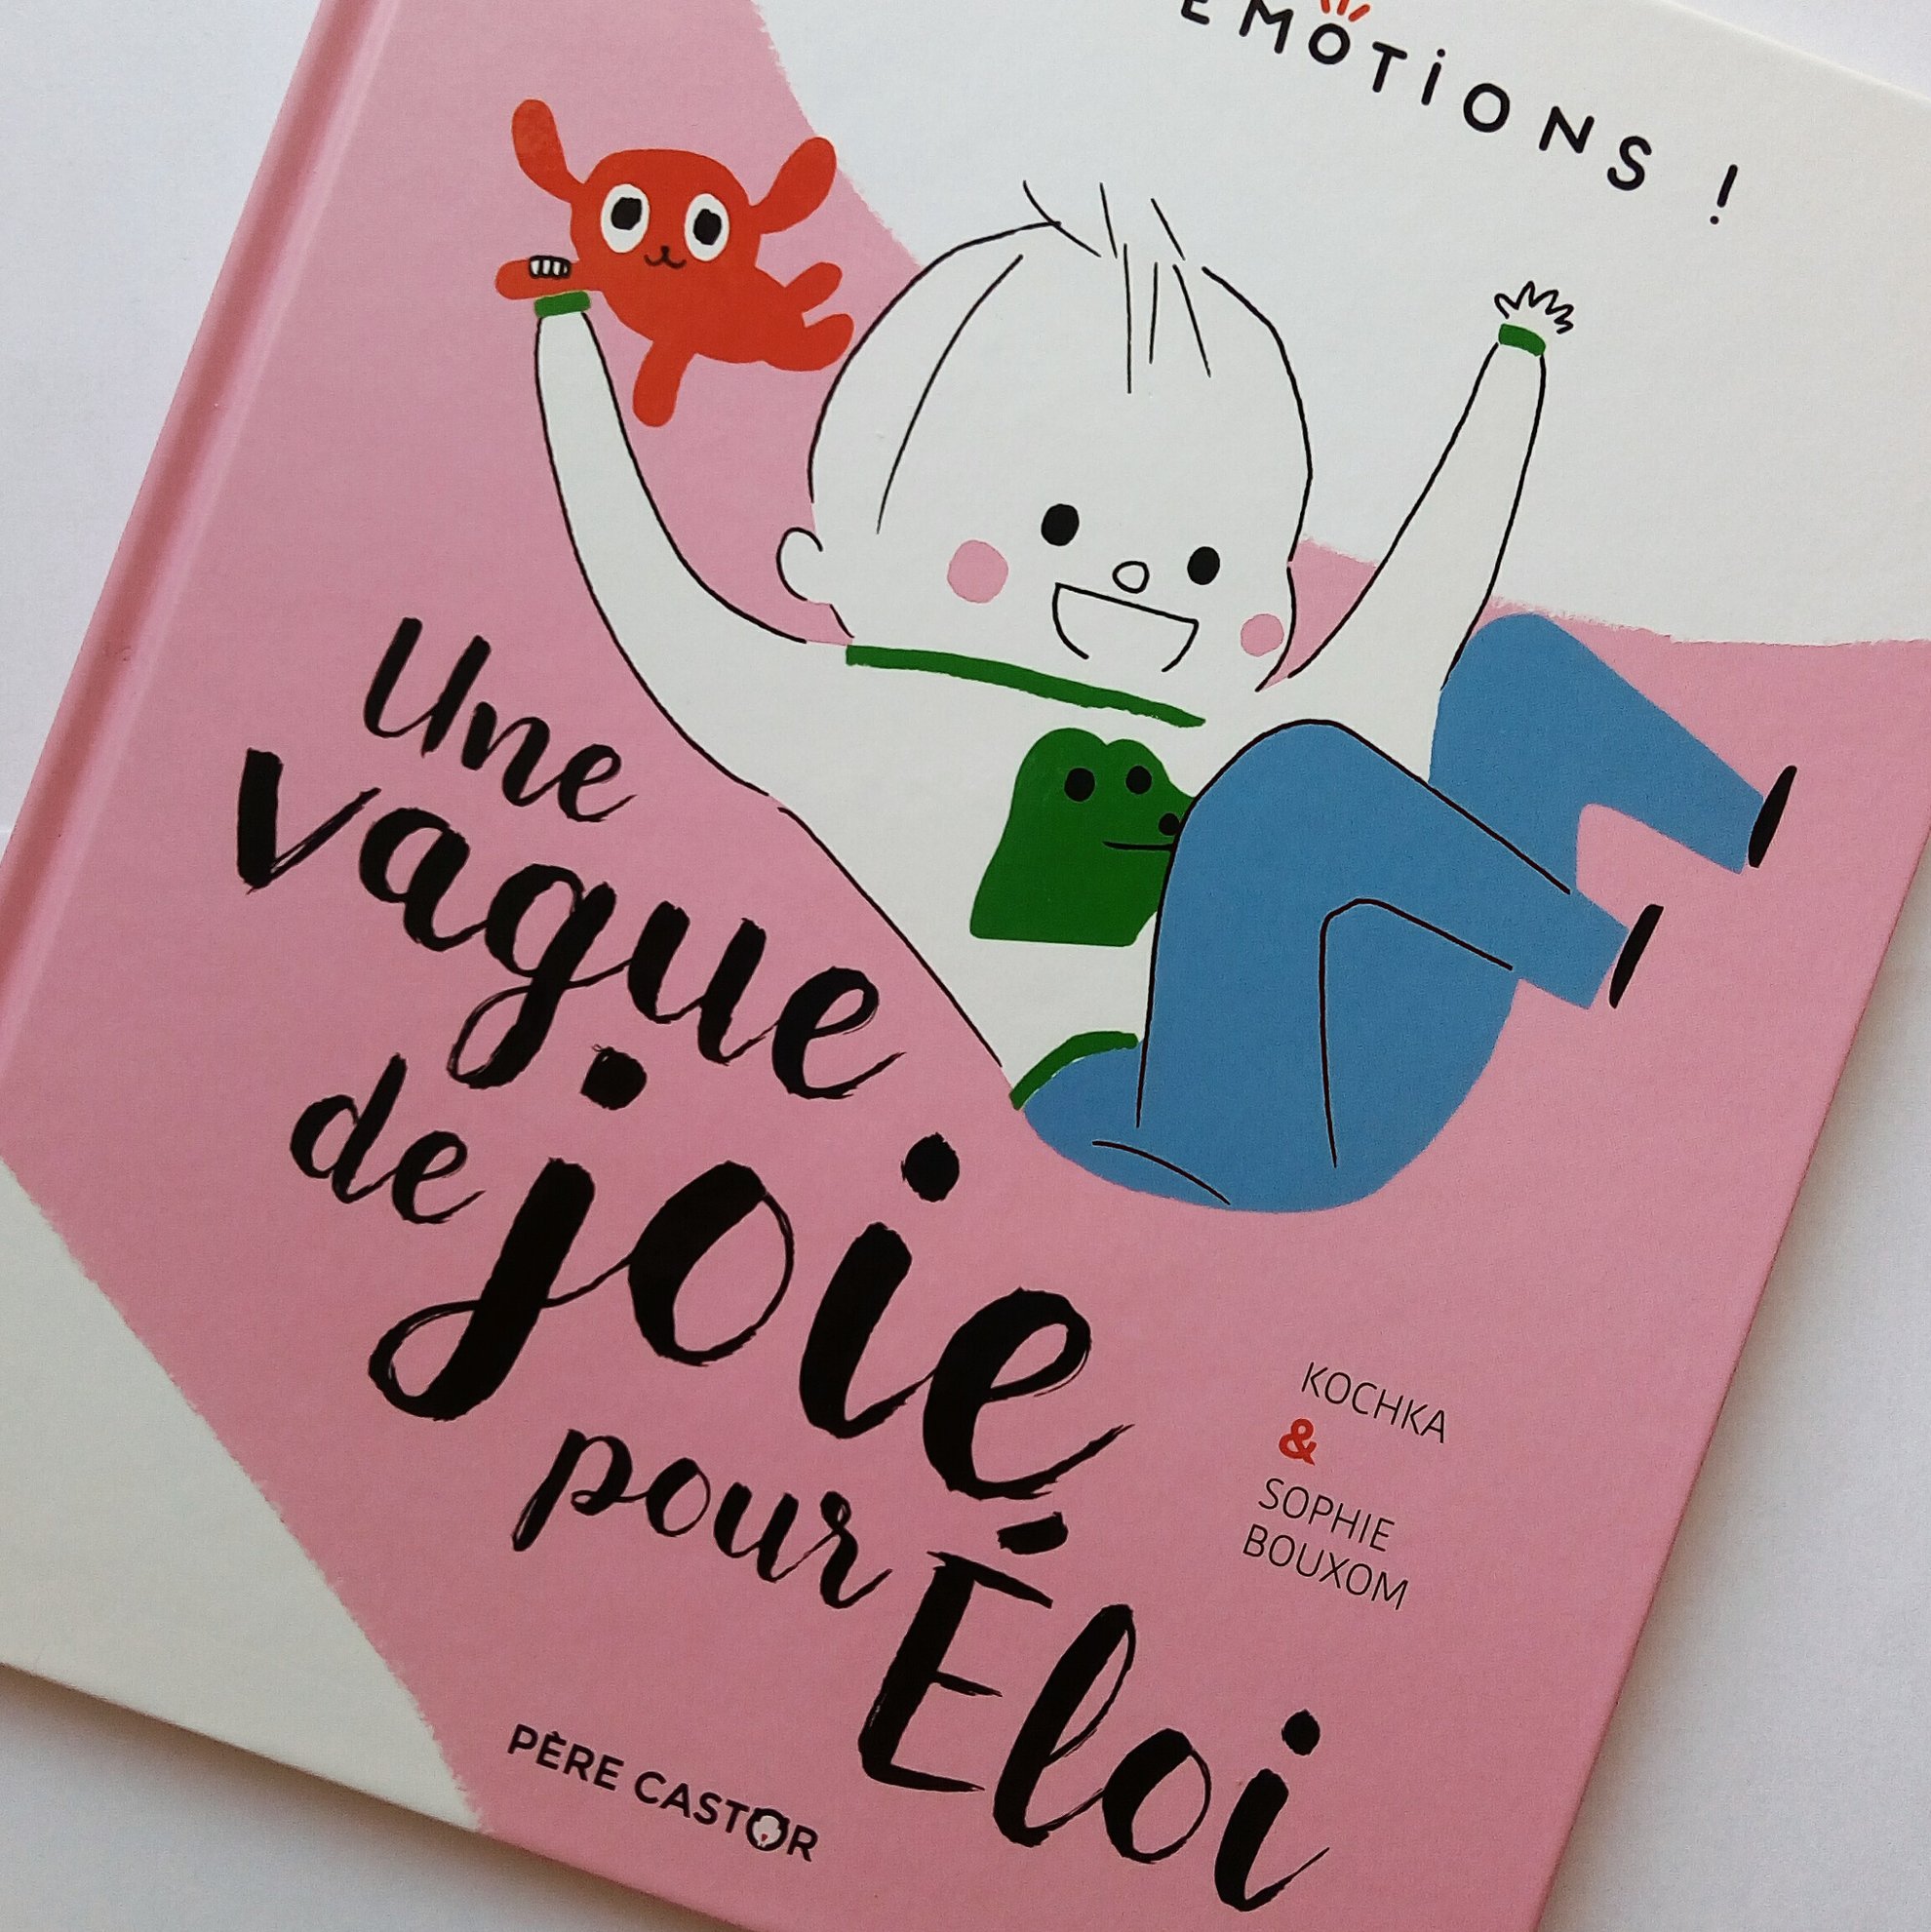 Une vague de joie pour Eloi Editions Pere Castor